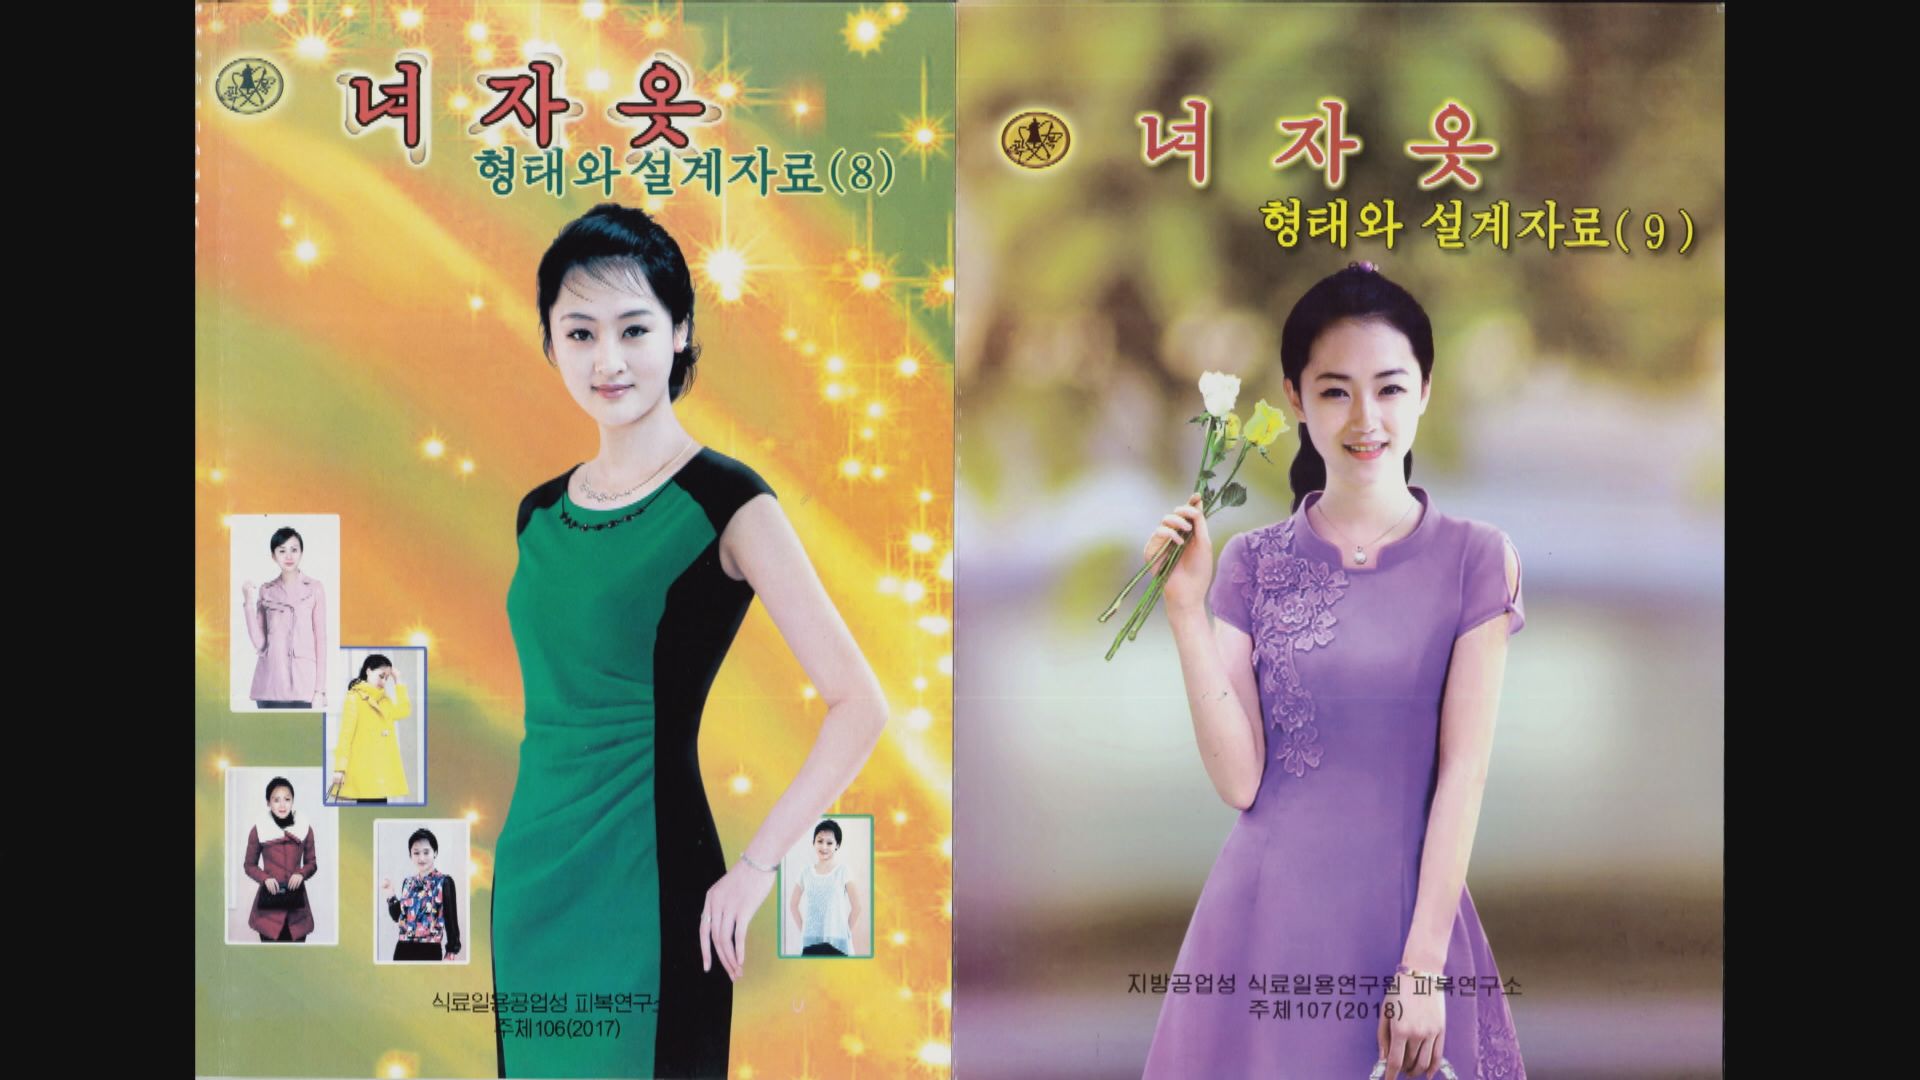 【環球薈報】北韓出版時裝雜誌列官方認可款式